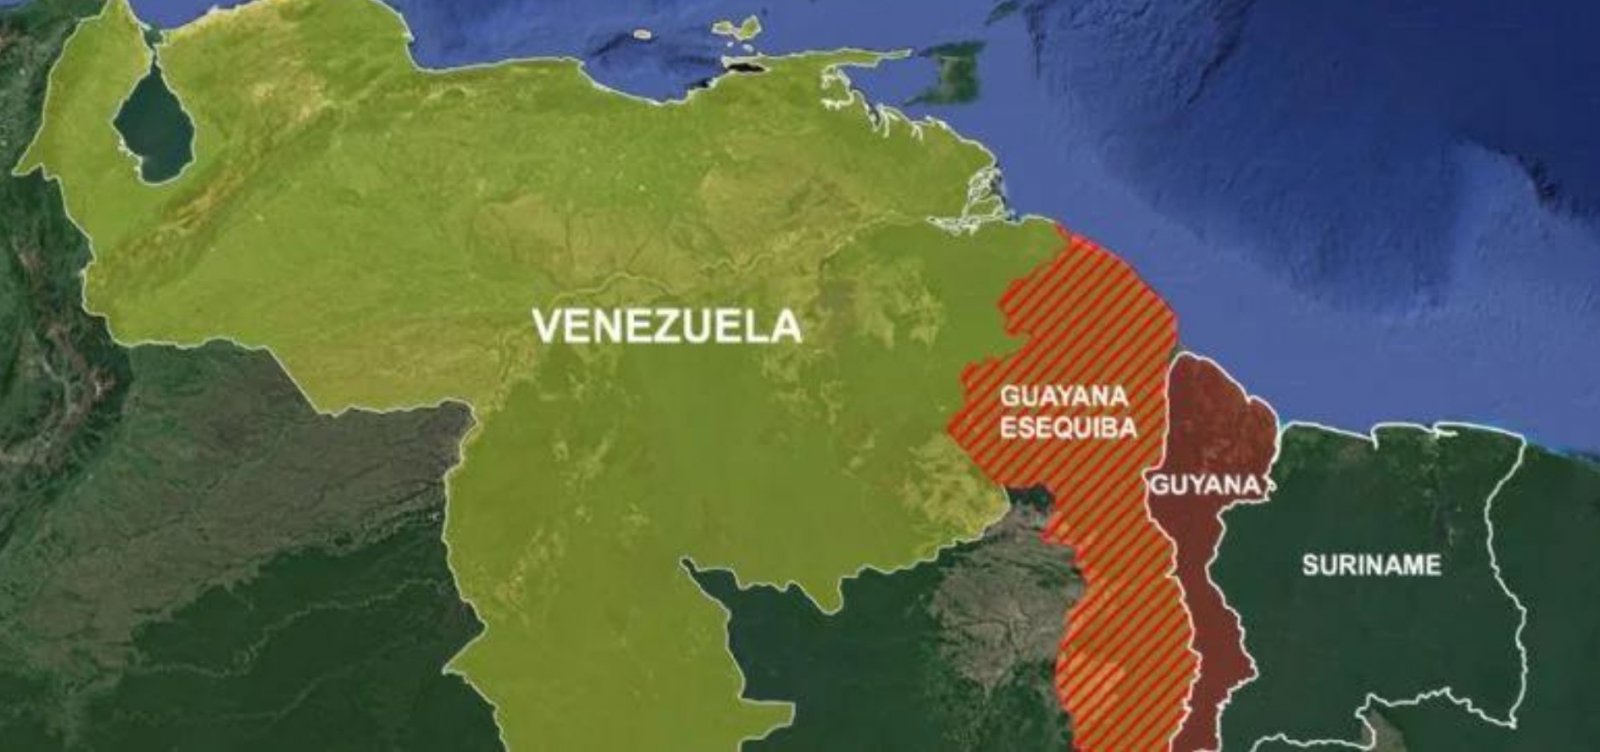 Tribunal de Haia decide que Venezuela não pode anexar território de Essequibo